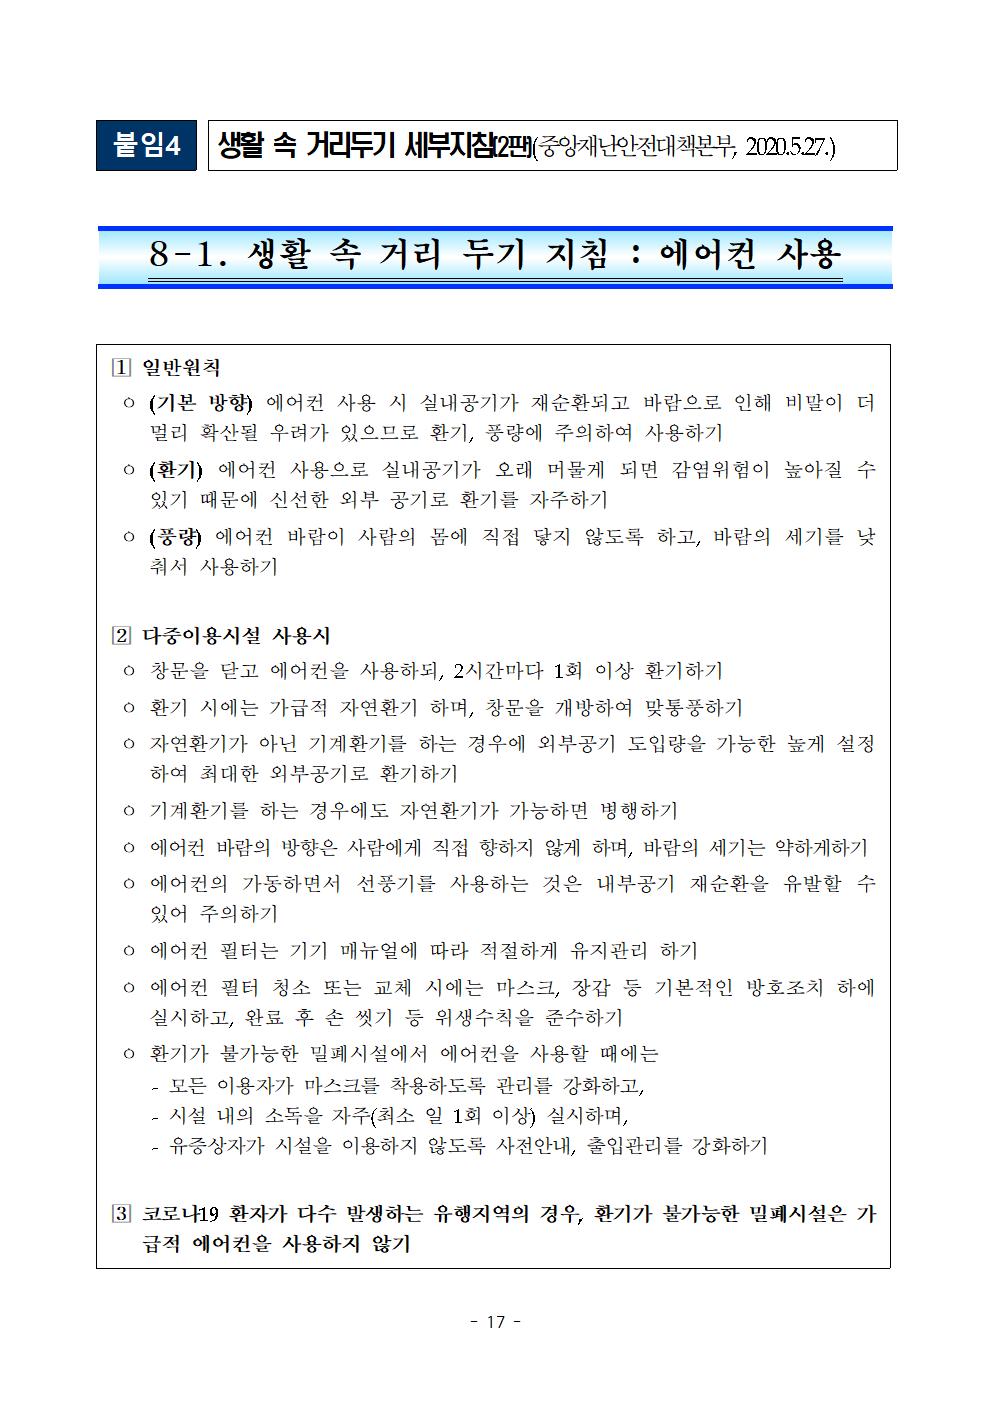 2021학년도 학교별 입학전형 안전관리 계획_한국게임과학고(홈페이지게시)019